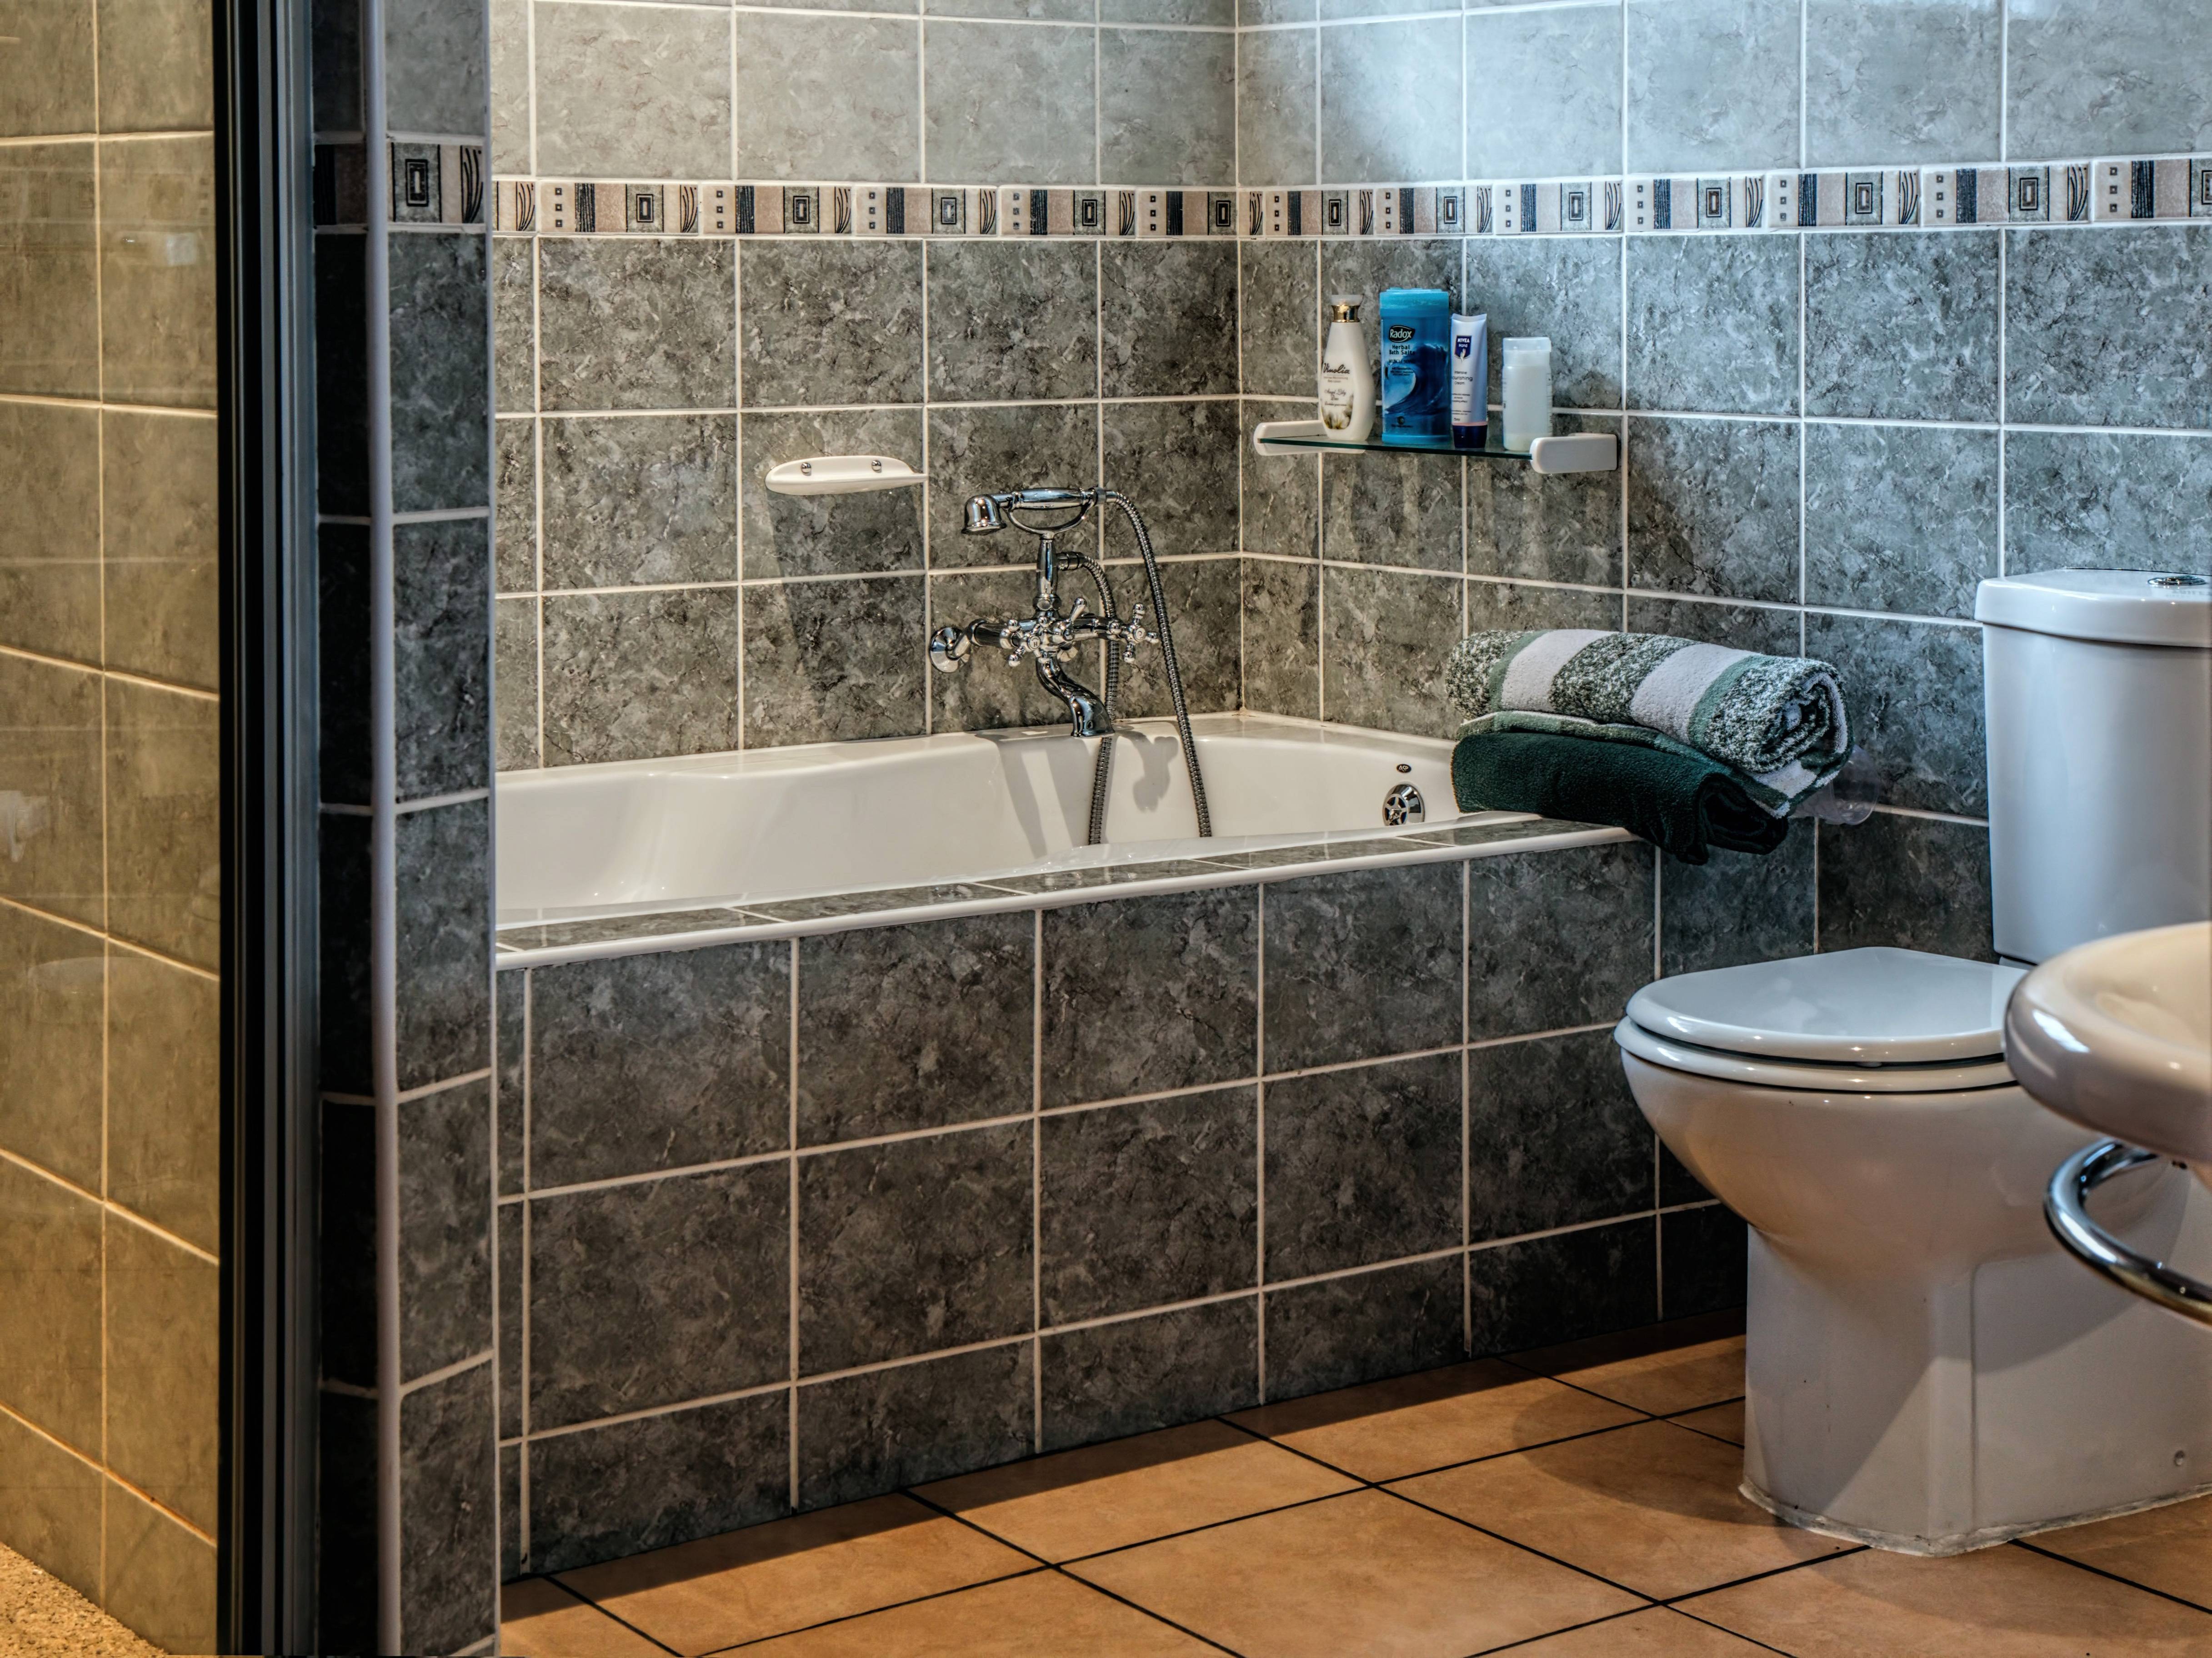 Какую плитку выбрать для ванной, что лучше для вашей комнаты?